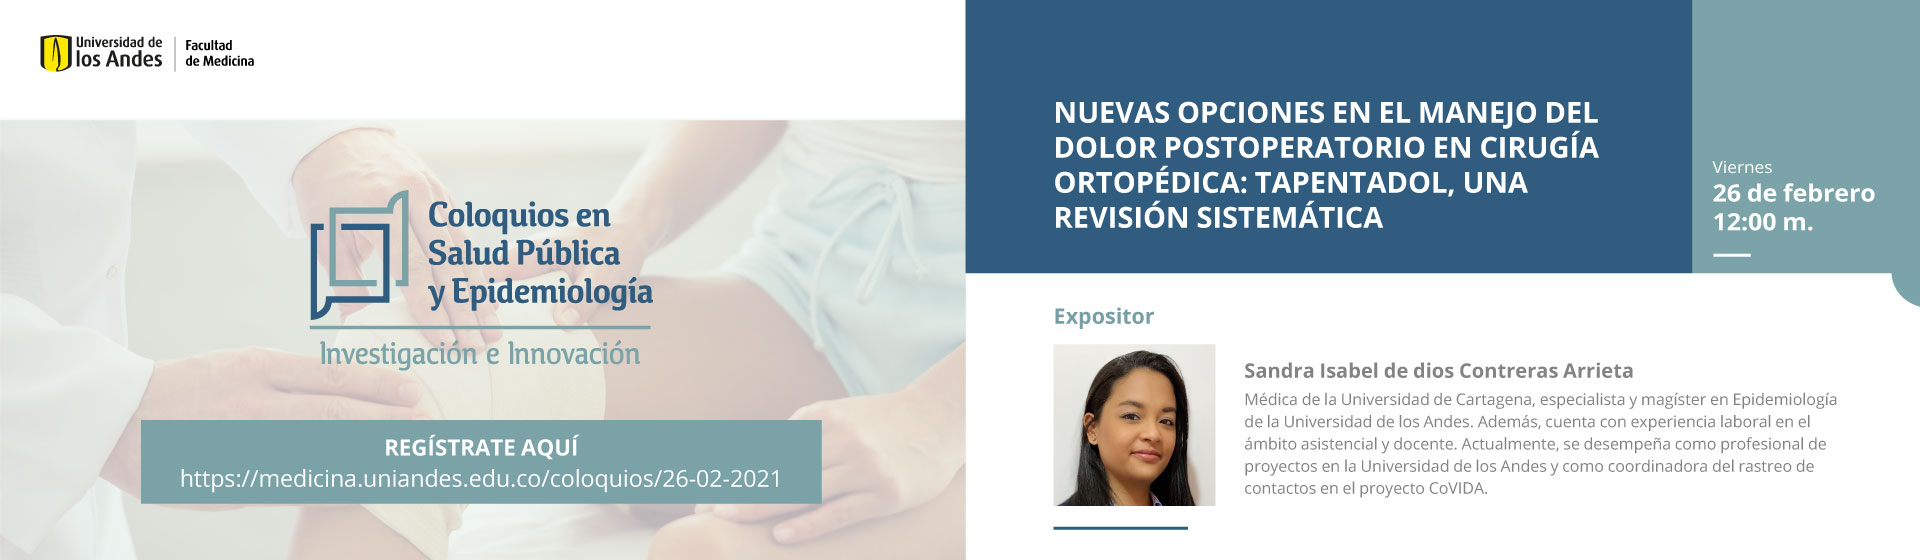 Nuevas opciones en el manejo del dolor postoperatorio en cirugía ortopédica